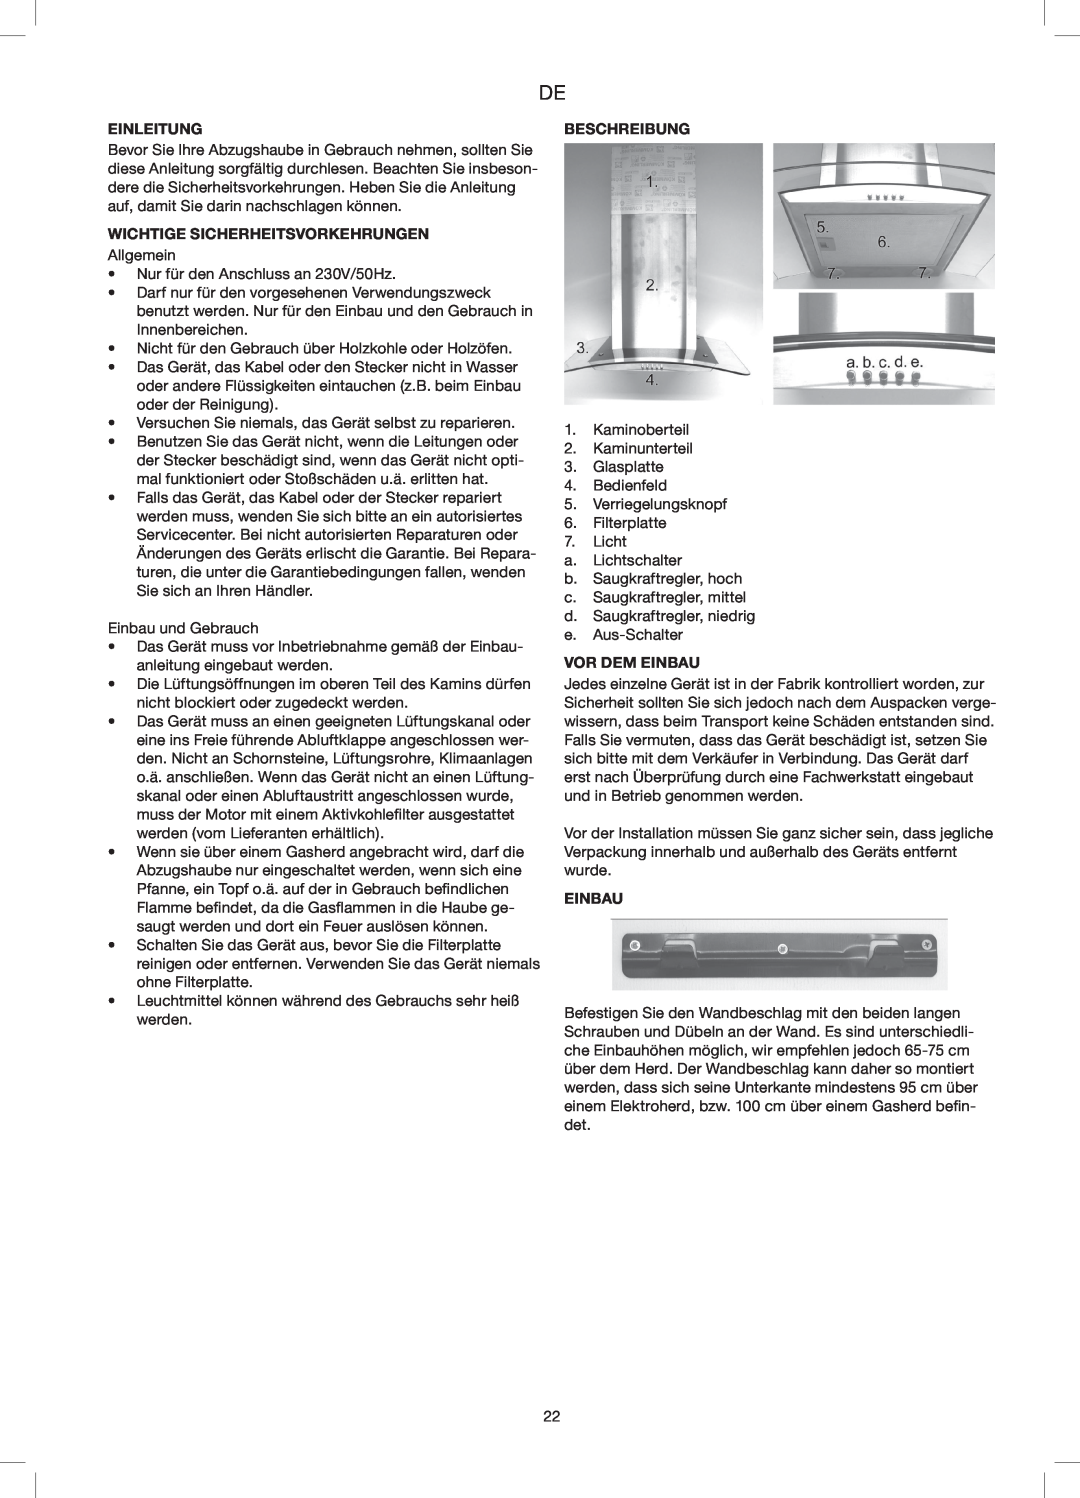 Melissa 258-014 manual Einleitung, Wichtige Sicherheitsvorkehrungen, Beschreibung, Vor Dem Einbau 